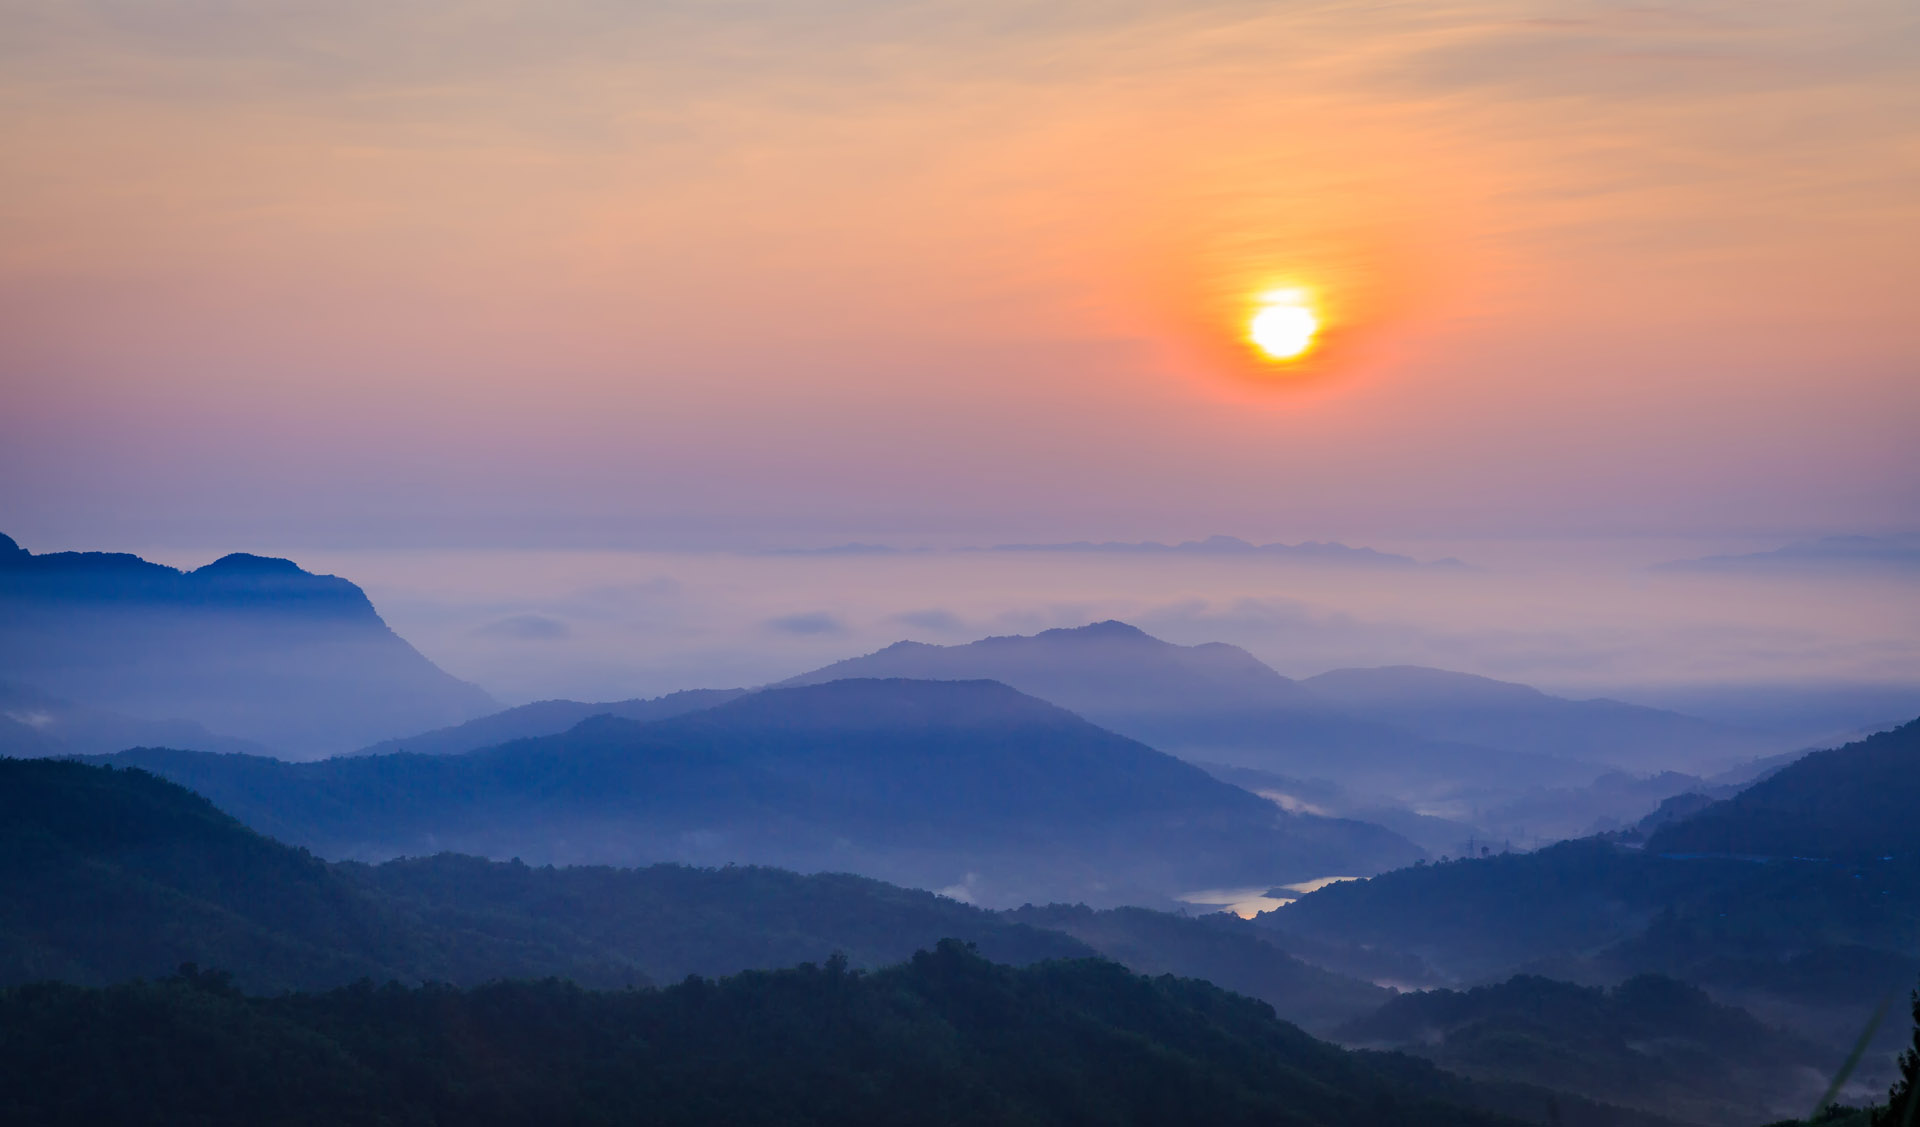 พระอาทิตย์ขึ้นเหนือภูเขาสีฟ้าและท้องฟ้าสีม่วงใน ประเทศไทย